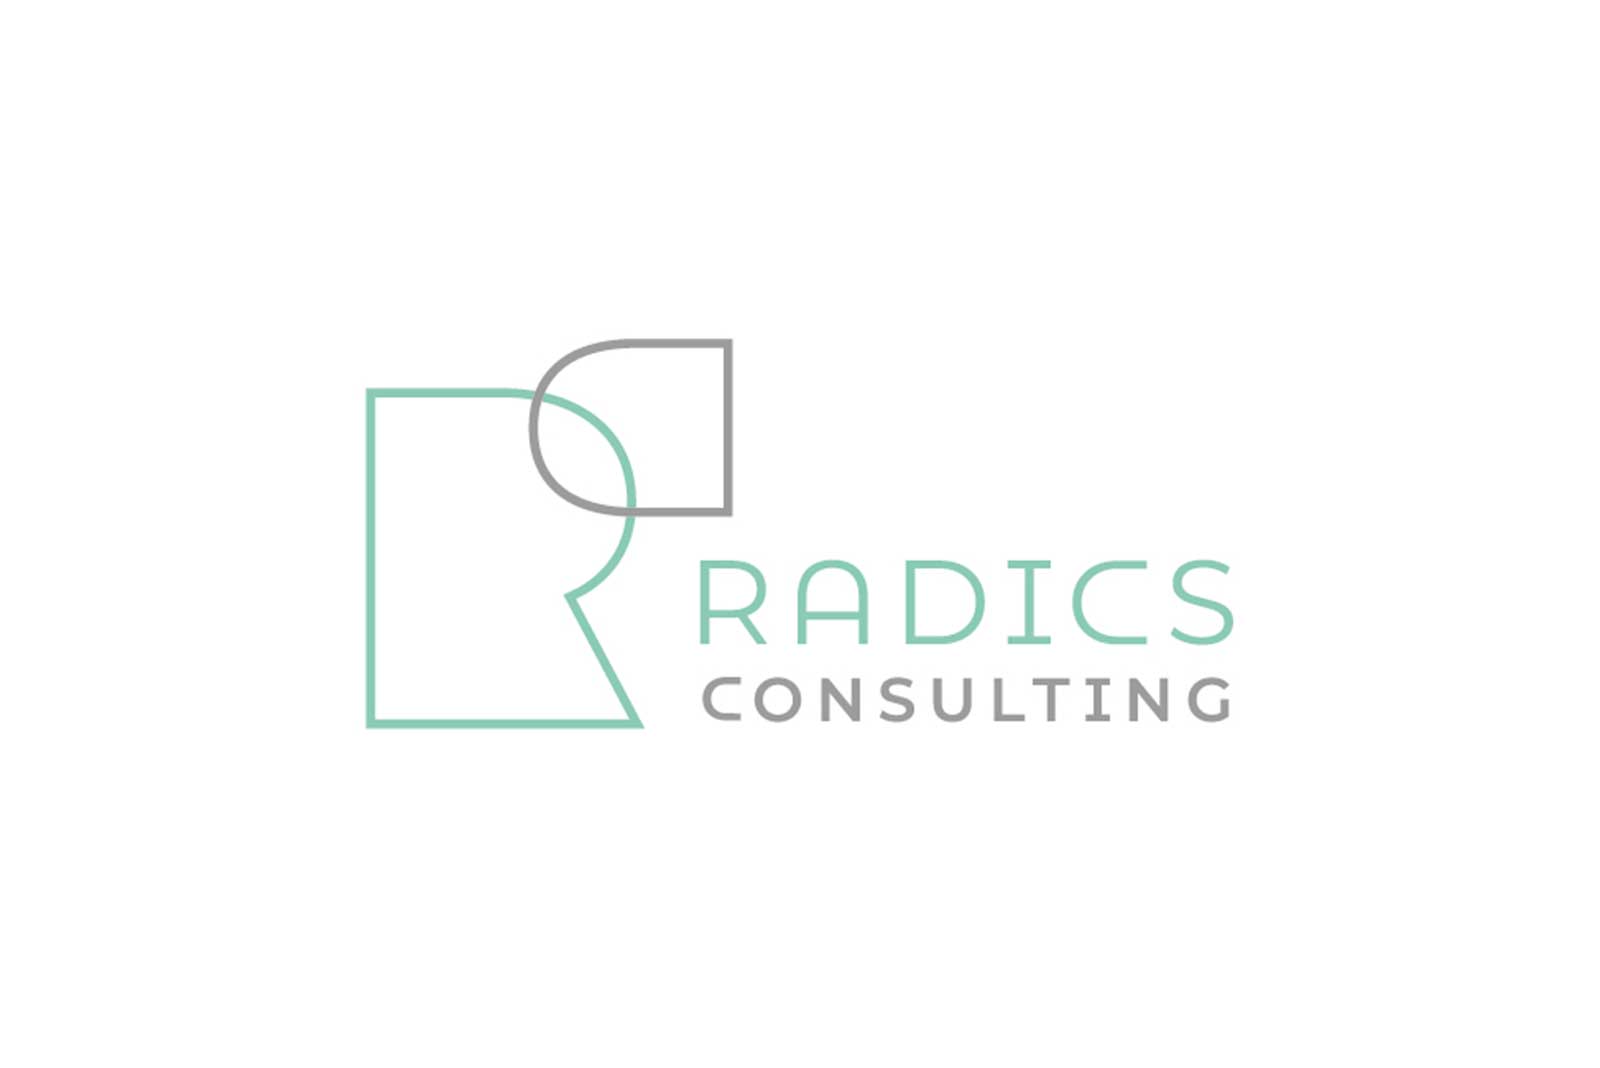 radios consulting regeneration business logo